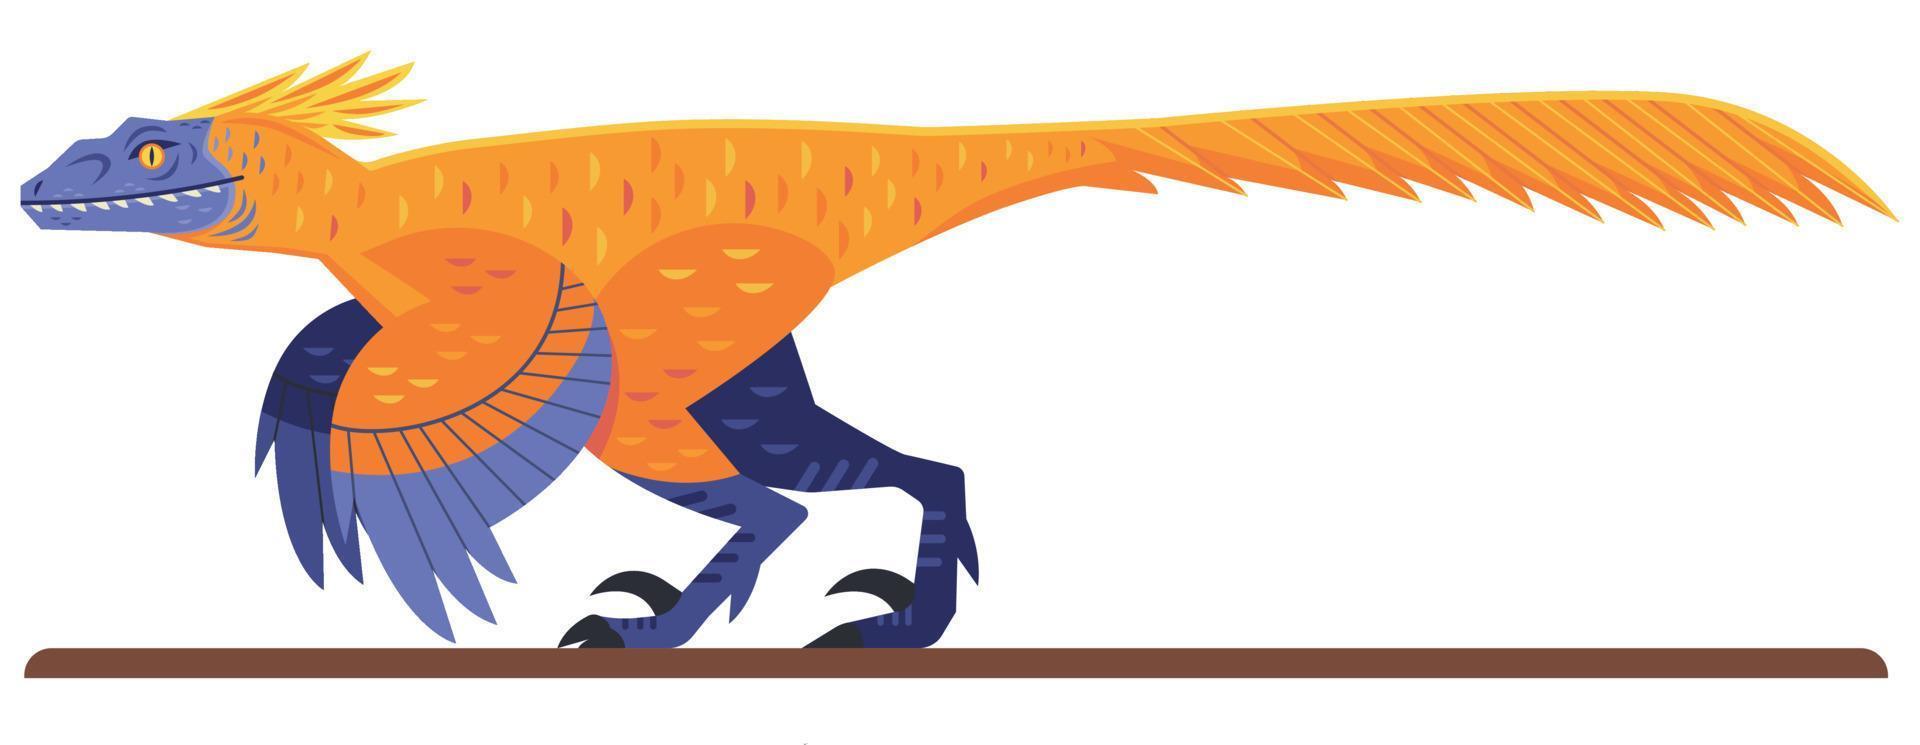 pyroraptor dinosaurier raptor illustration vektor